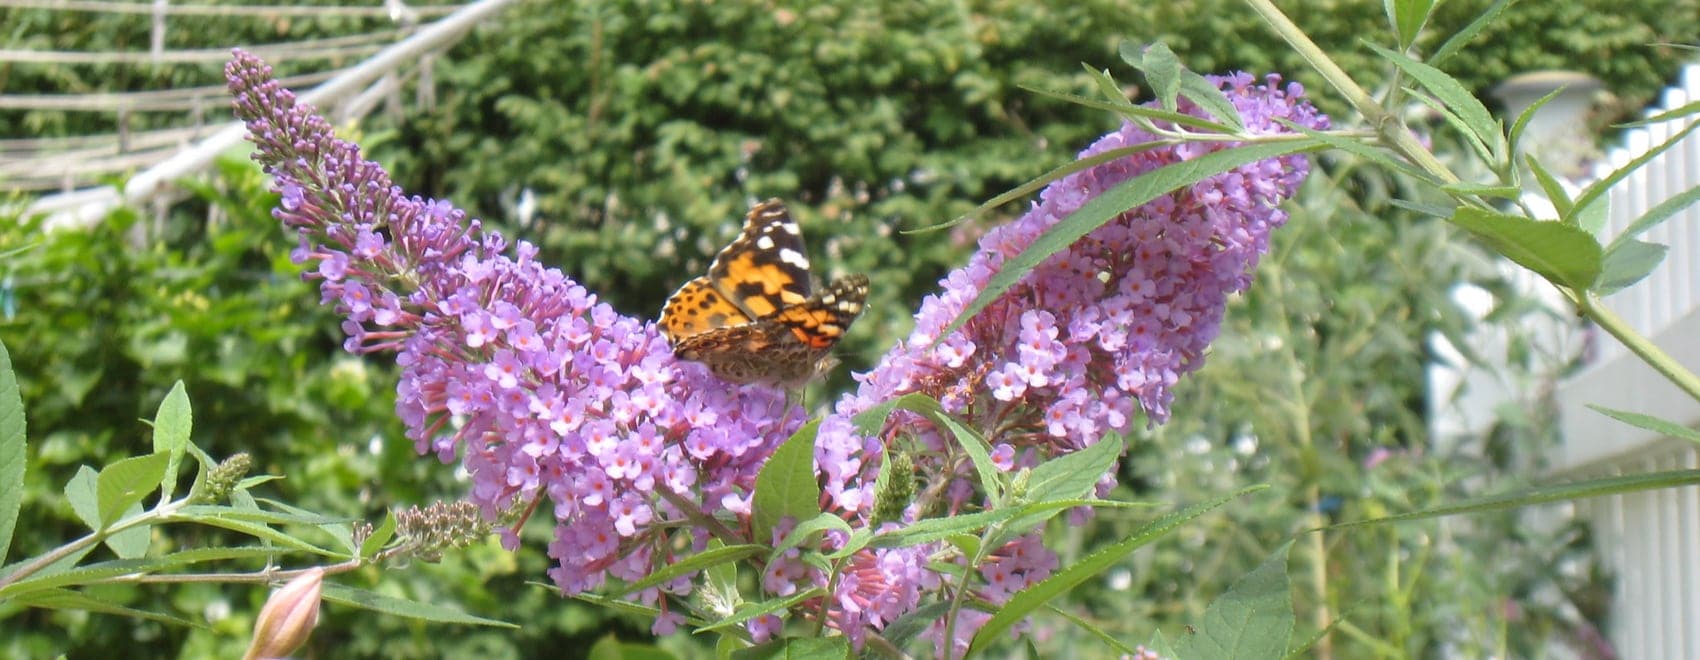 15 ideas fáciles para jardines de mariposas y guía de jardines de mariposas